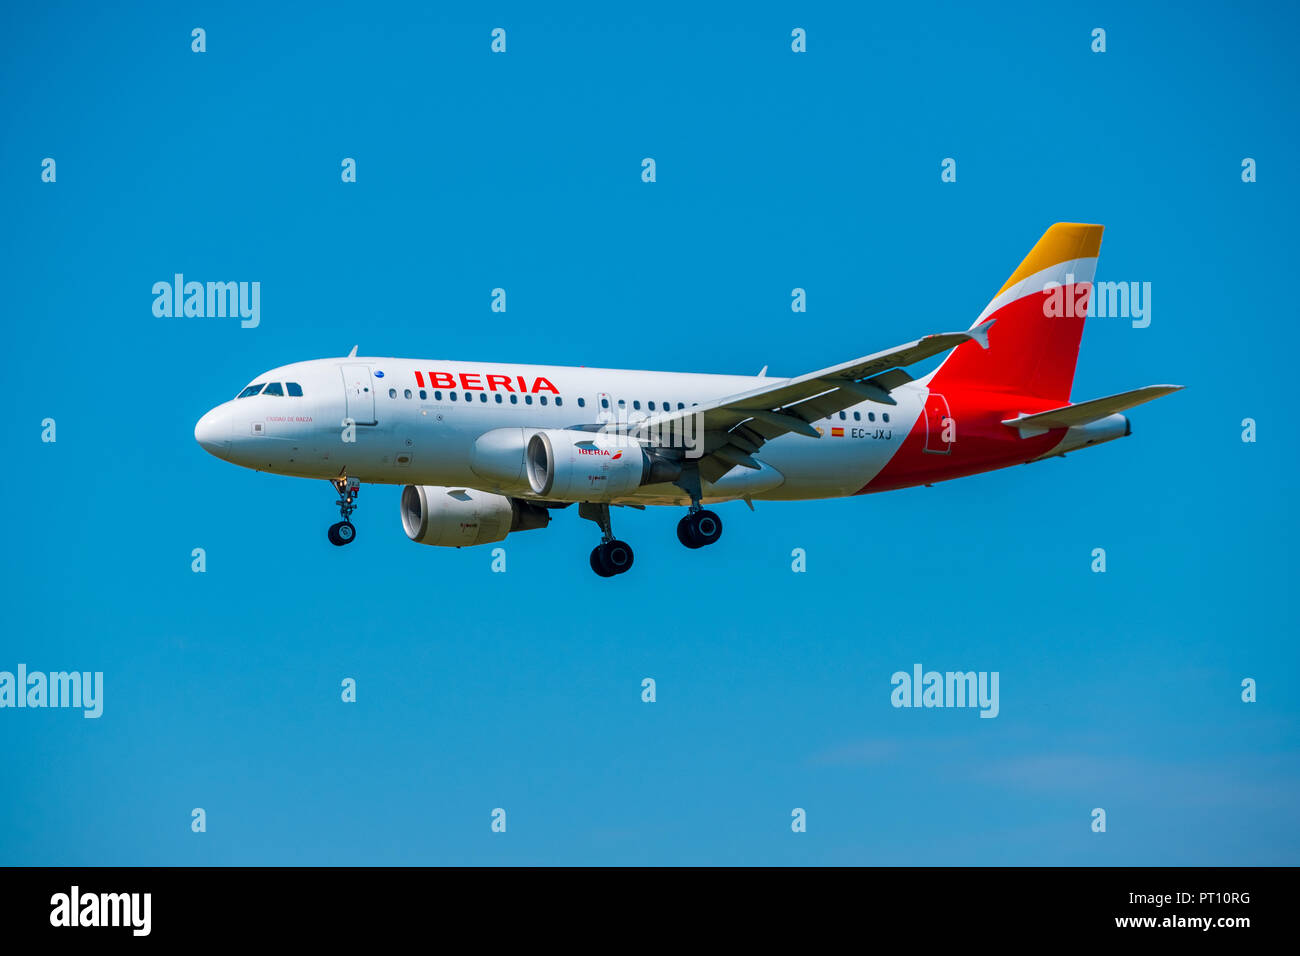 Zurigo, Svizzera - Luglio 19, 2018: Iberia airlines aereo preparando per lo sbarco a tempo di giorno a Zurigo aeroporto nternational Foto Stock